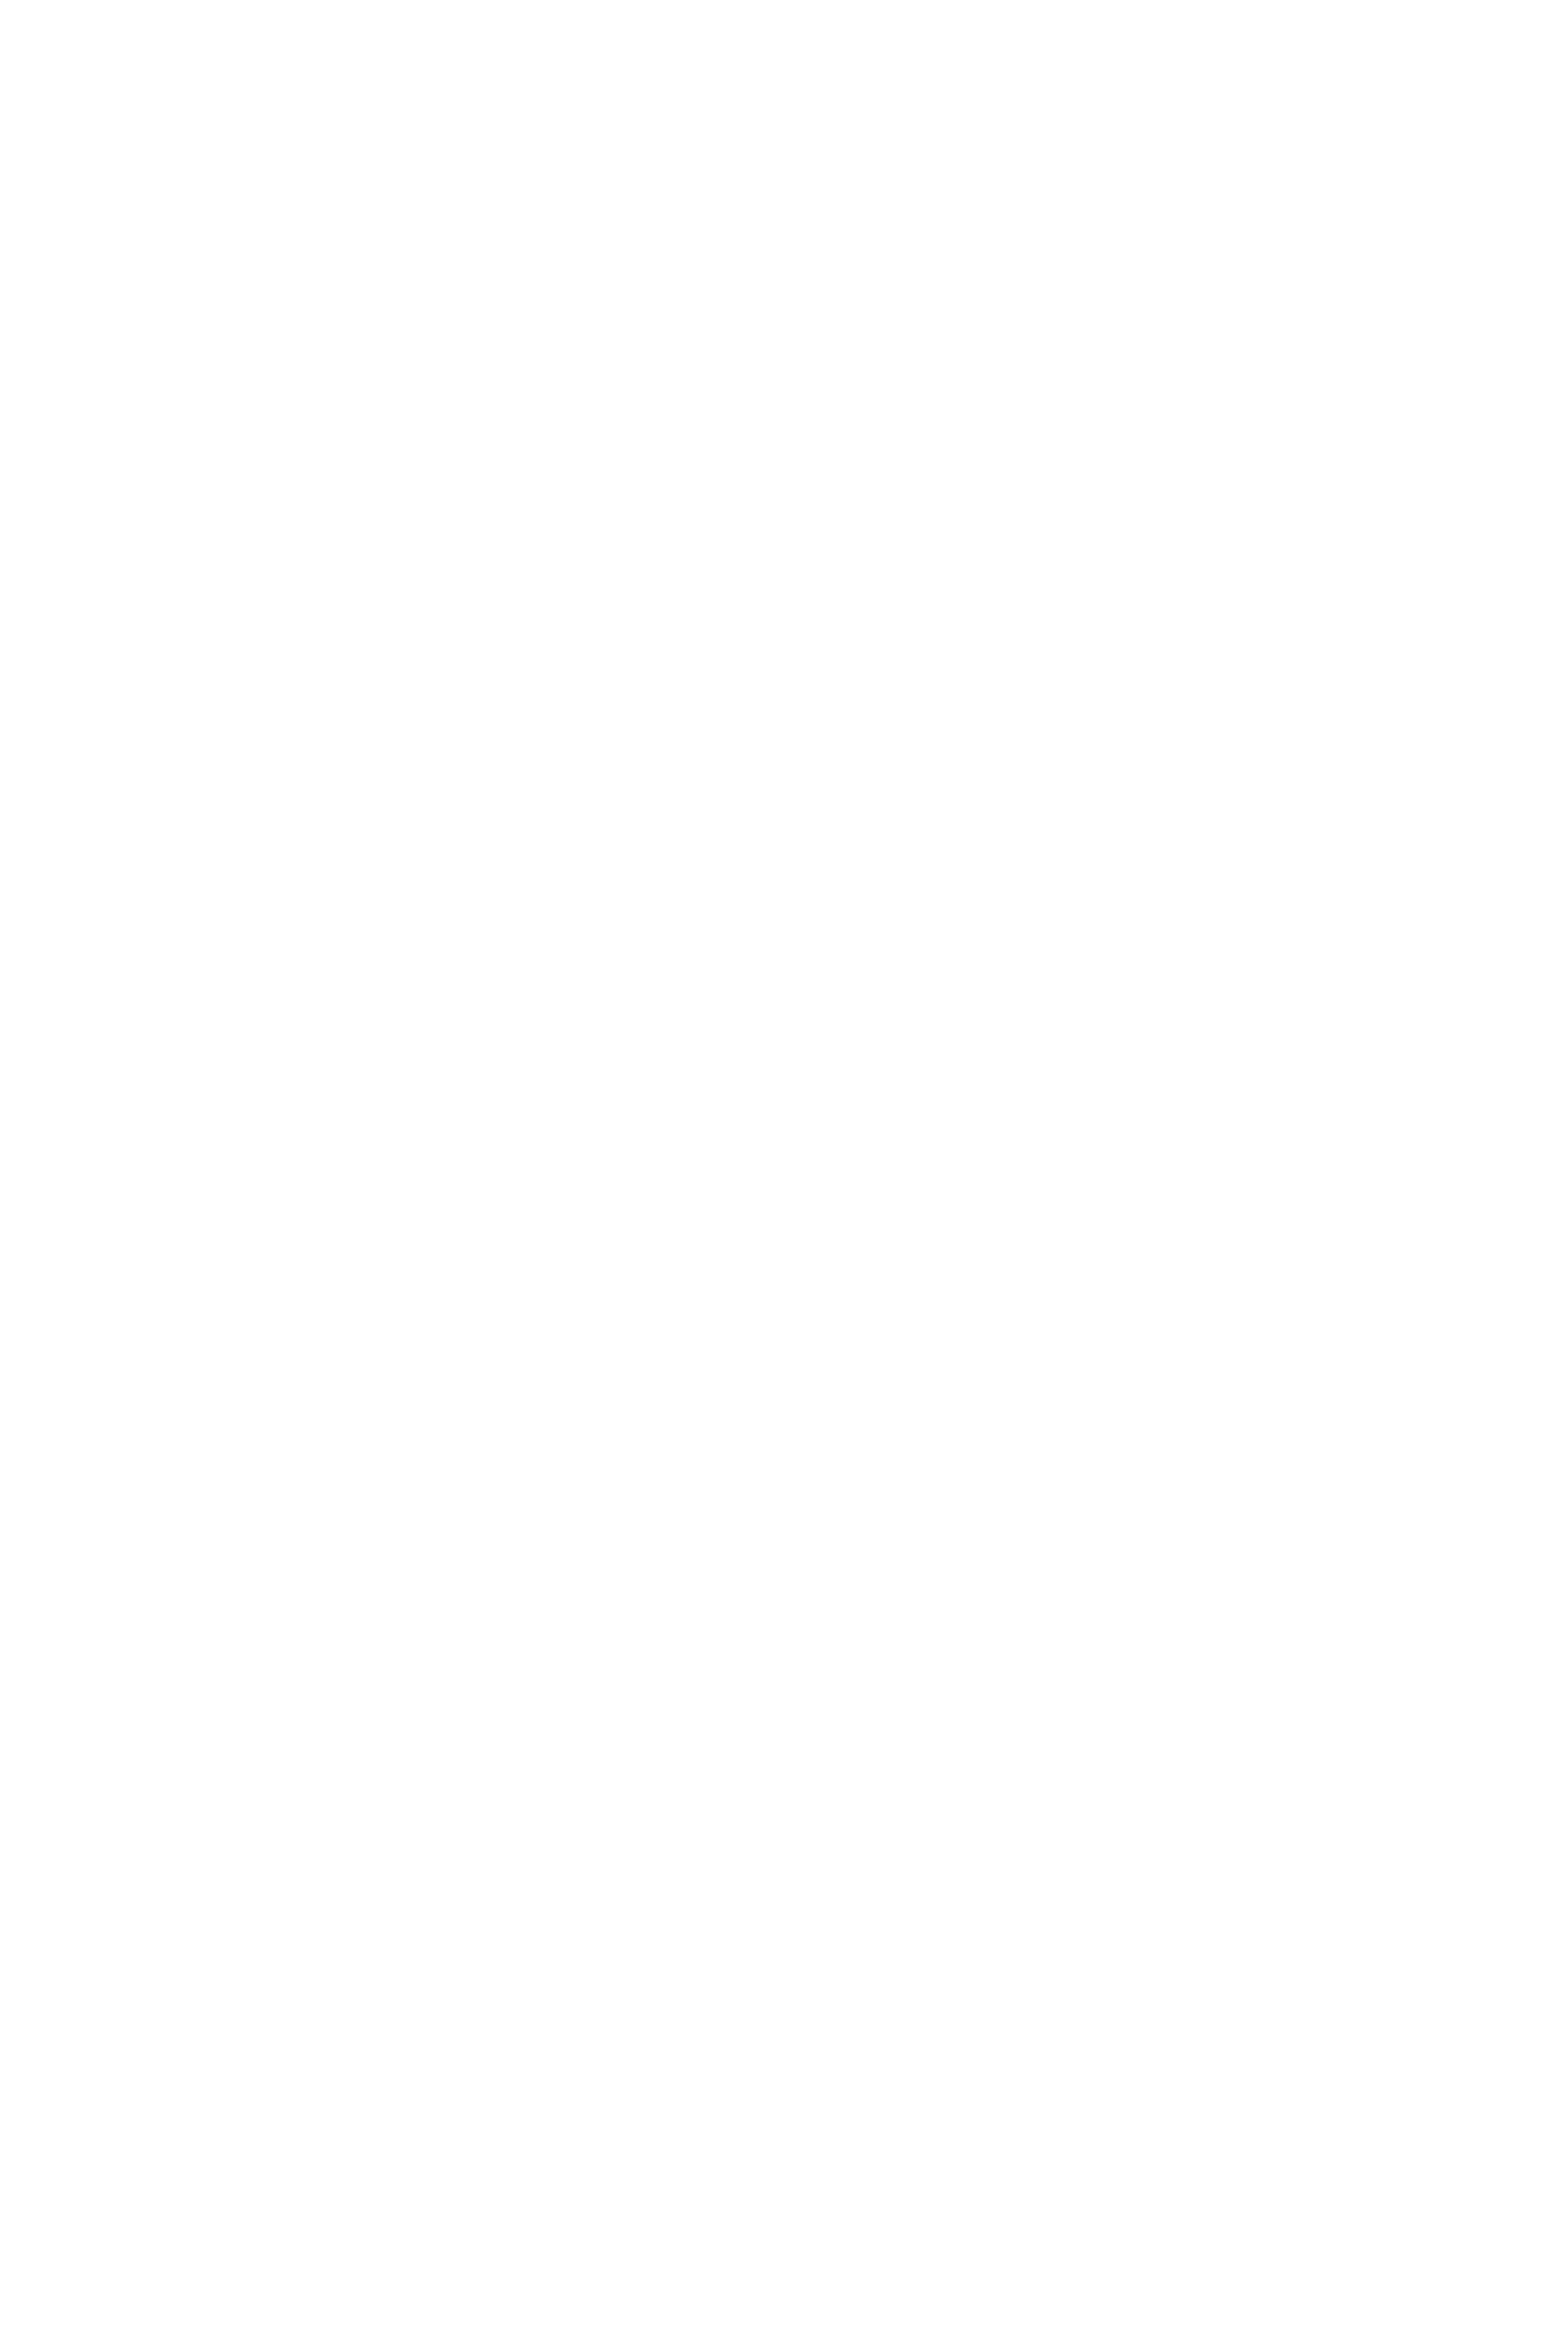  Крыша 20 этажа - панорамный вид на Санкт-Петербург: Финский залив, Спас-на-крови, Казанский и Исаакиевский соборы, башня Газпрома, Зенит арена, Петропавловская крепость